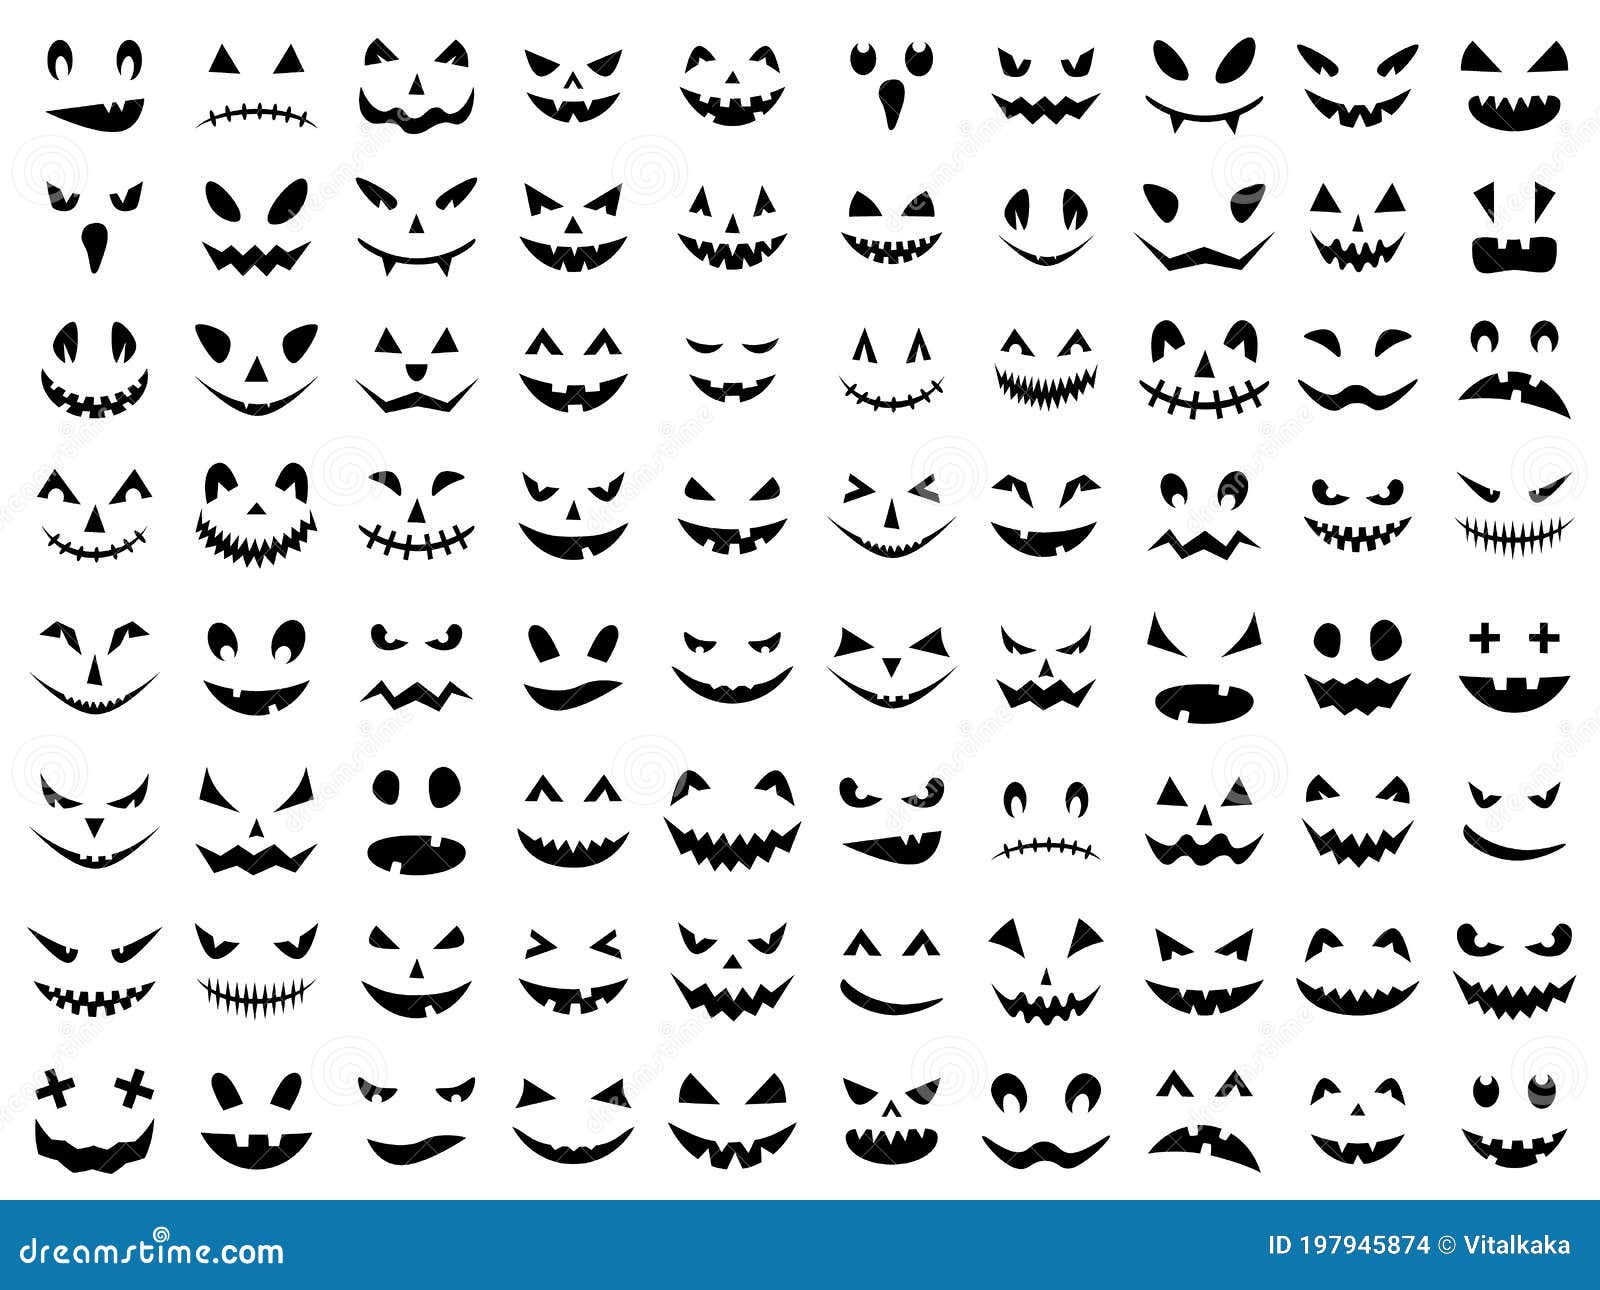 Sorriso De Dia Das Bruxas Rostos Assustadores E Engraçados De Abóbora Ou  Fantasma Do Halloween Ilustração Vetorial Ilustração Stock - Ilustração de  divertimento, fofofo: 199591661